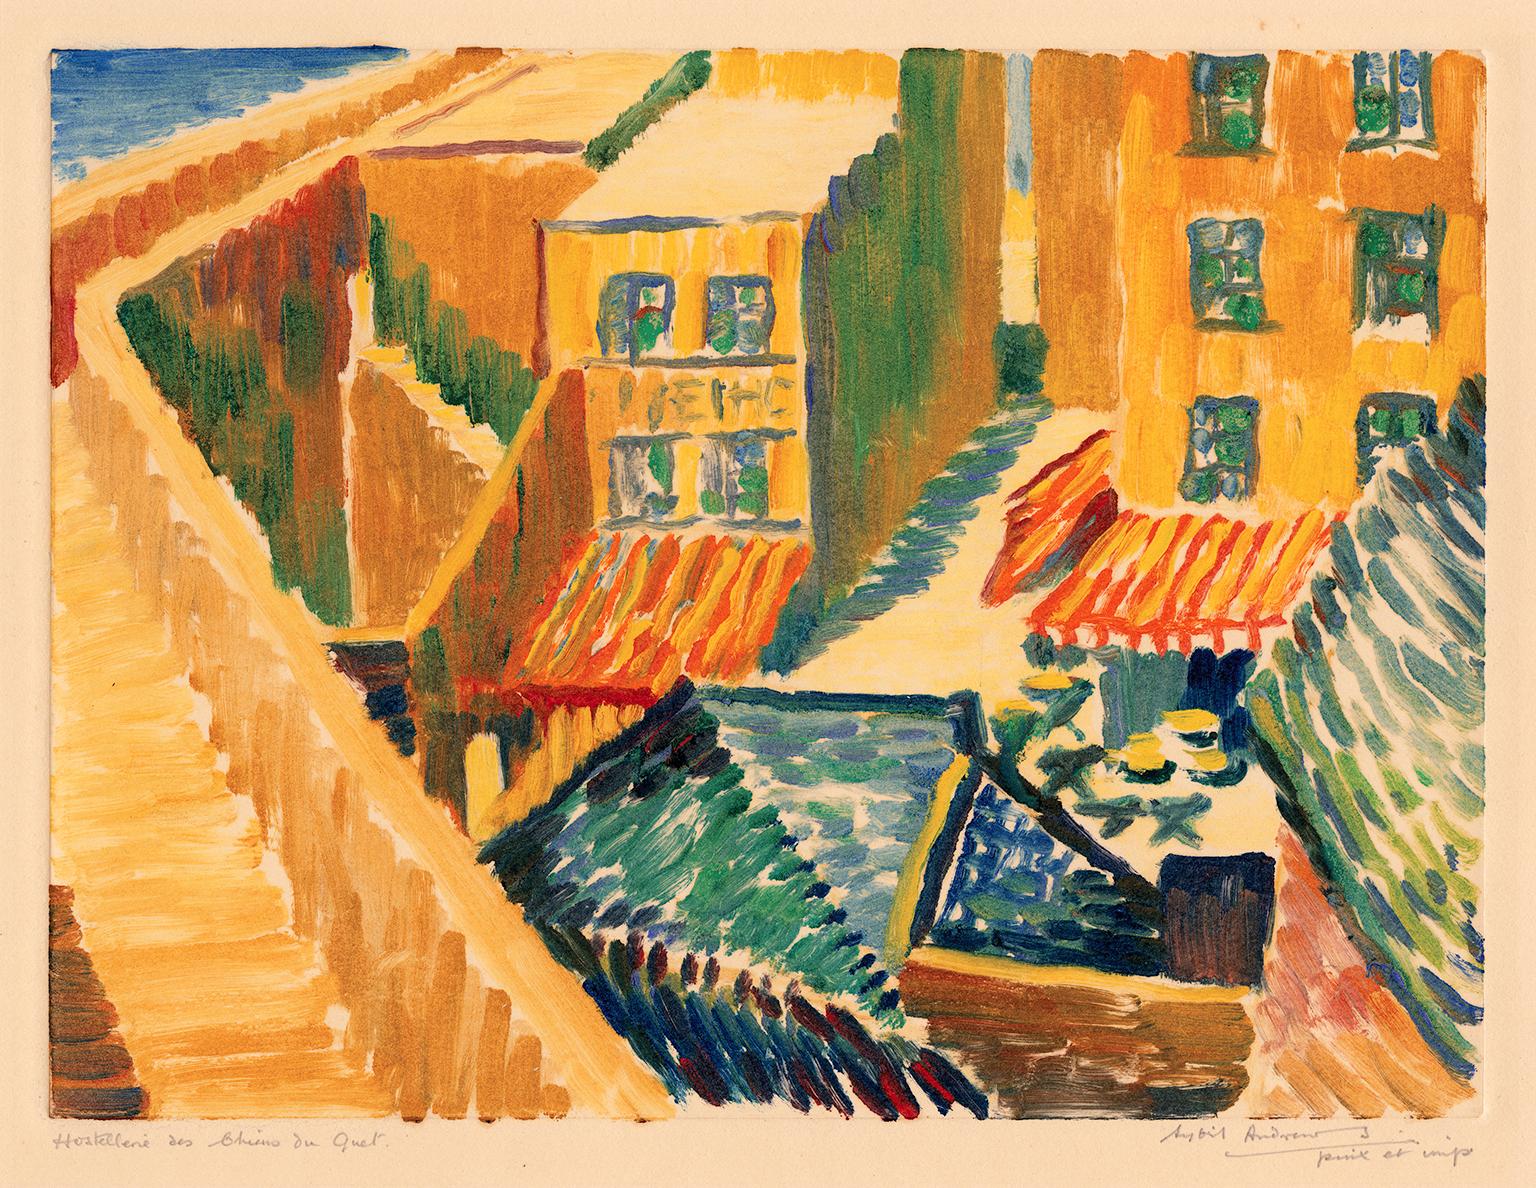 Hostellerie des Chiens du Guet - Impressionnisme britannique des années 1920